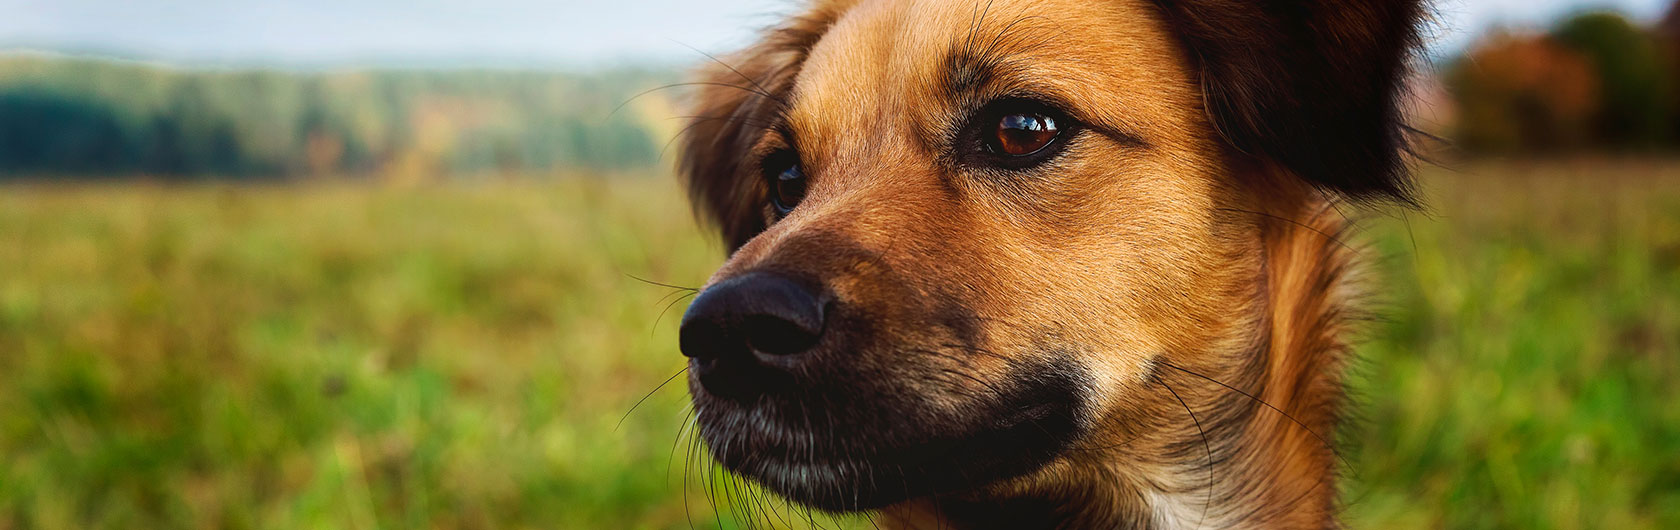 castracion de perros machos y alimento para mascotas de calidad nutribon